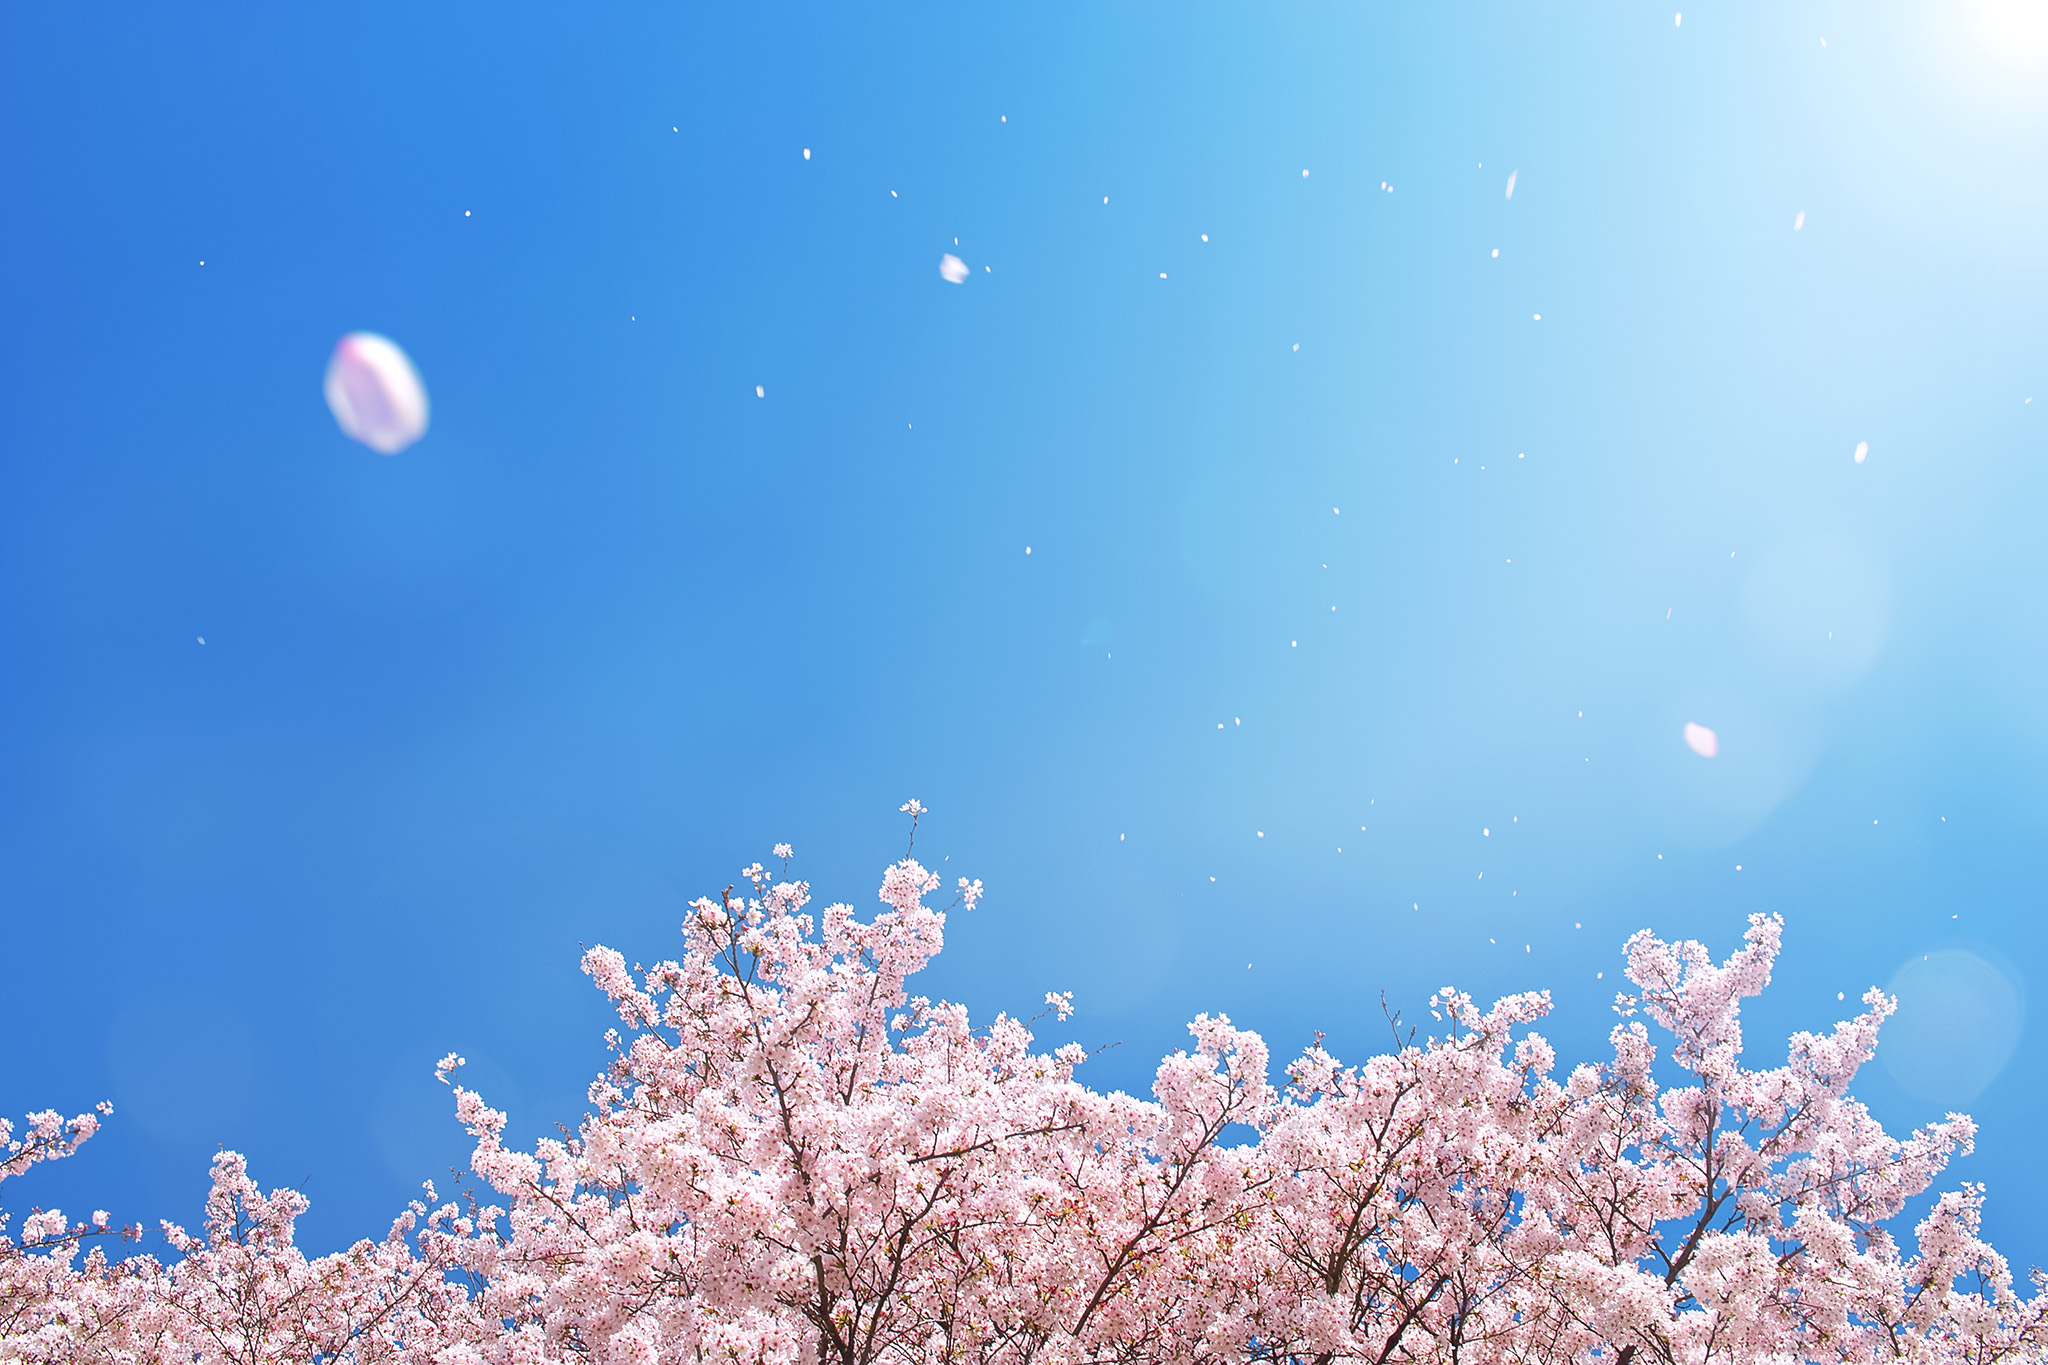 桜の季節に空撮を始めてみたい人必見 ドローン空撮基礎の基礎 ドローンステーションブログ Drone Station Blog